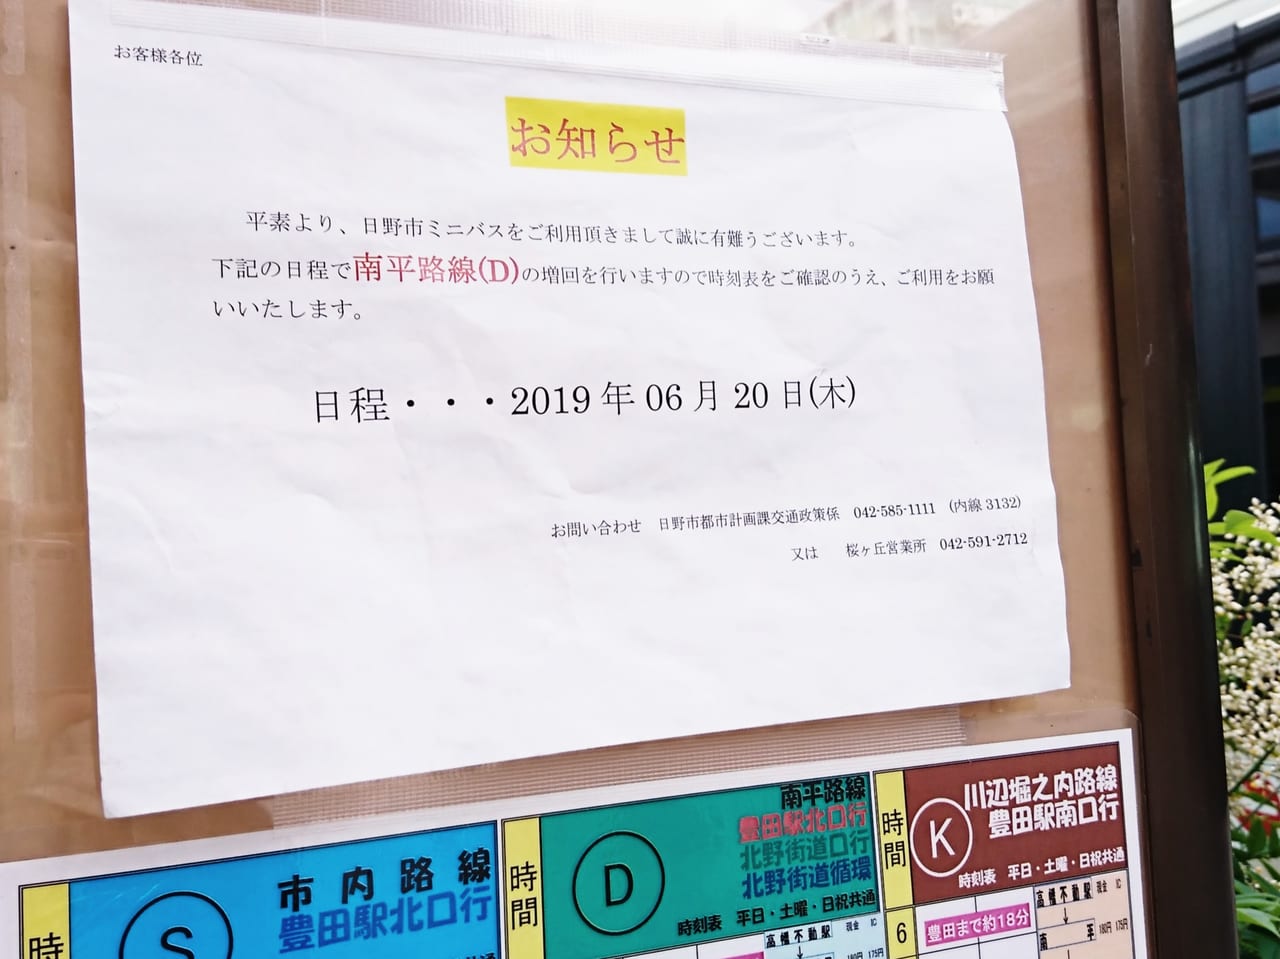 高幡不動駅からのバス、南平路線の変更のお知らせ貼り紙